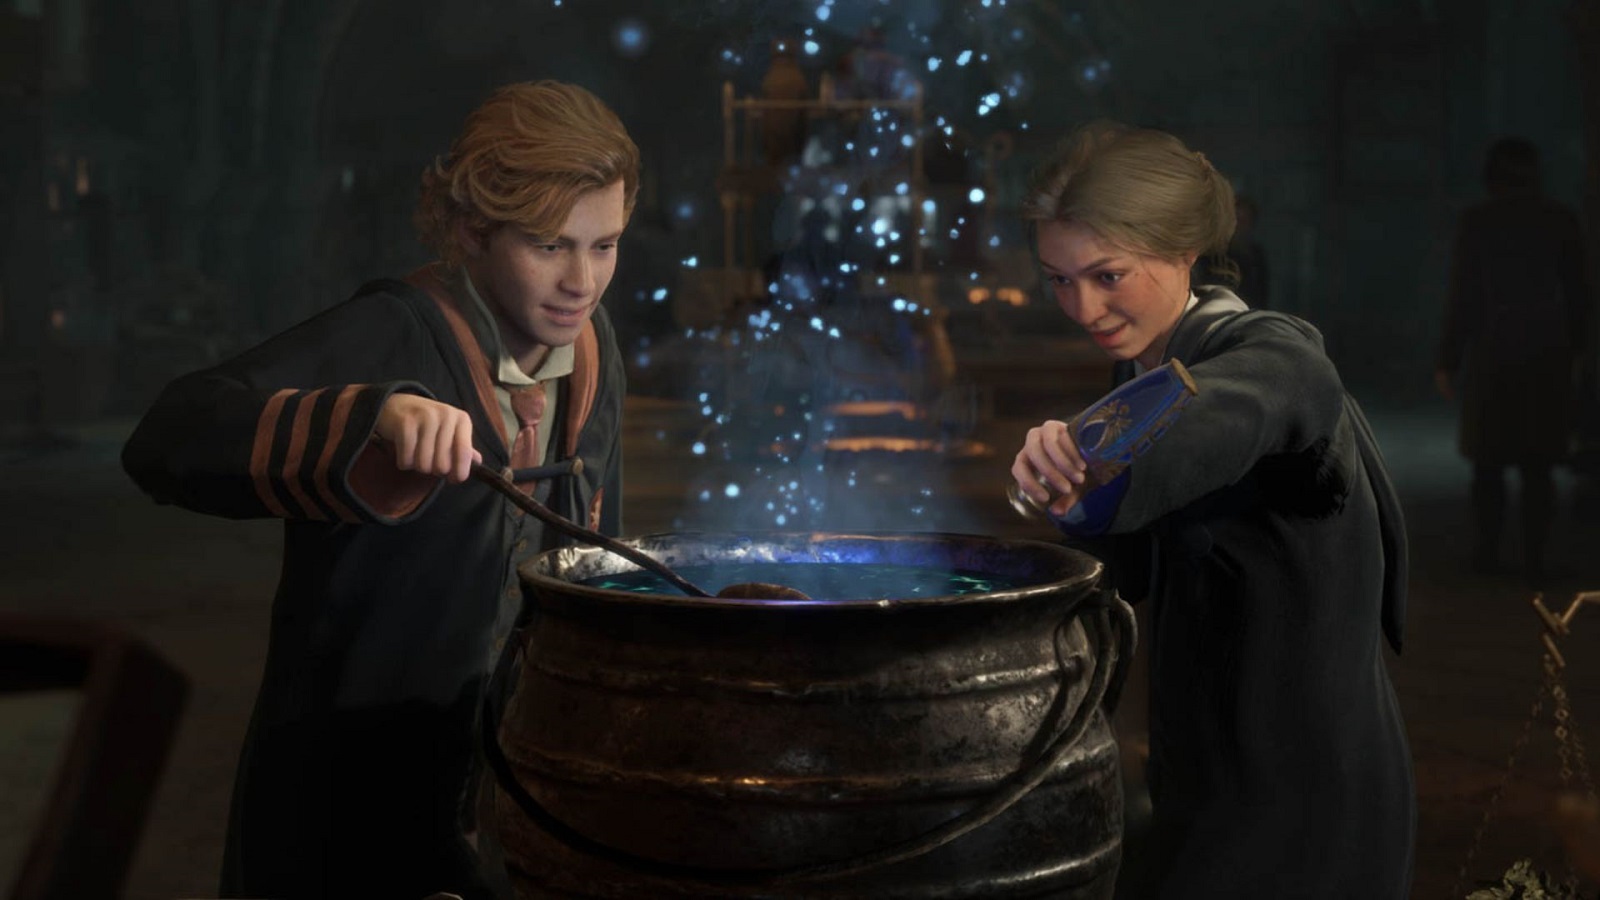 Dois Wizards criando uma poção no legado de Hogwarts